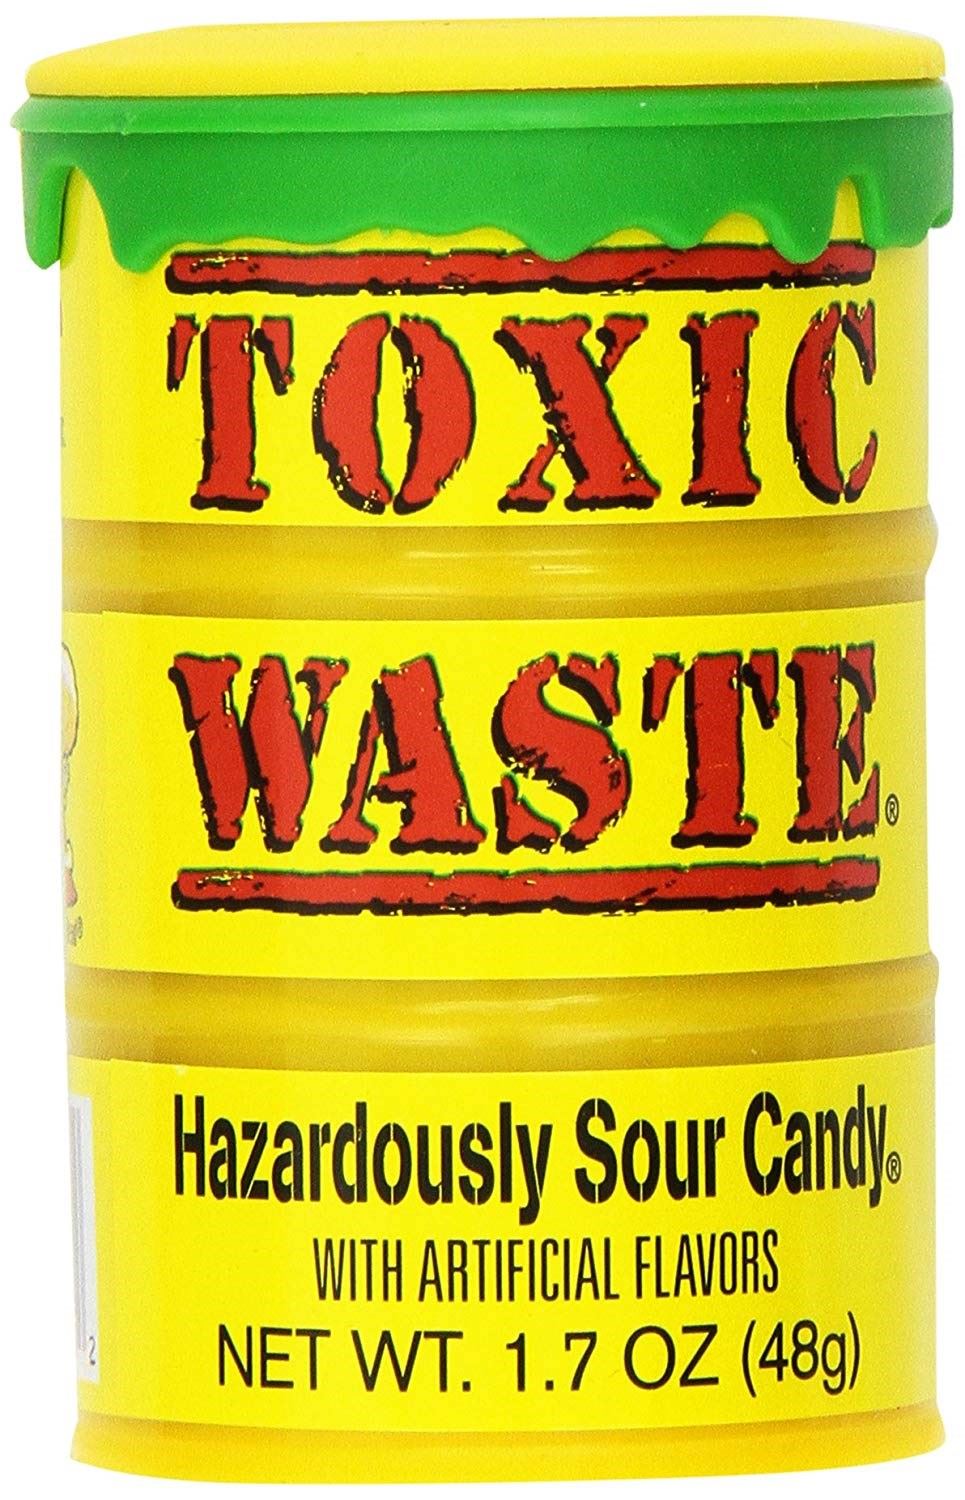 Toxic waste конфеты. Самые кислые конфеты в мире Toxic. Леденцы Toxic waste. Кислые конфеты Toxic waste. Токсик 5